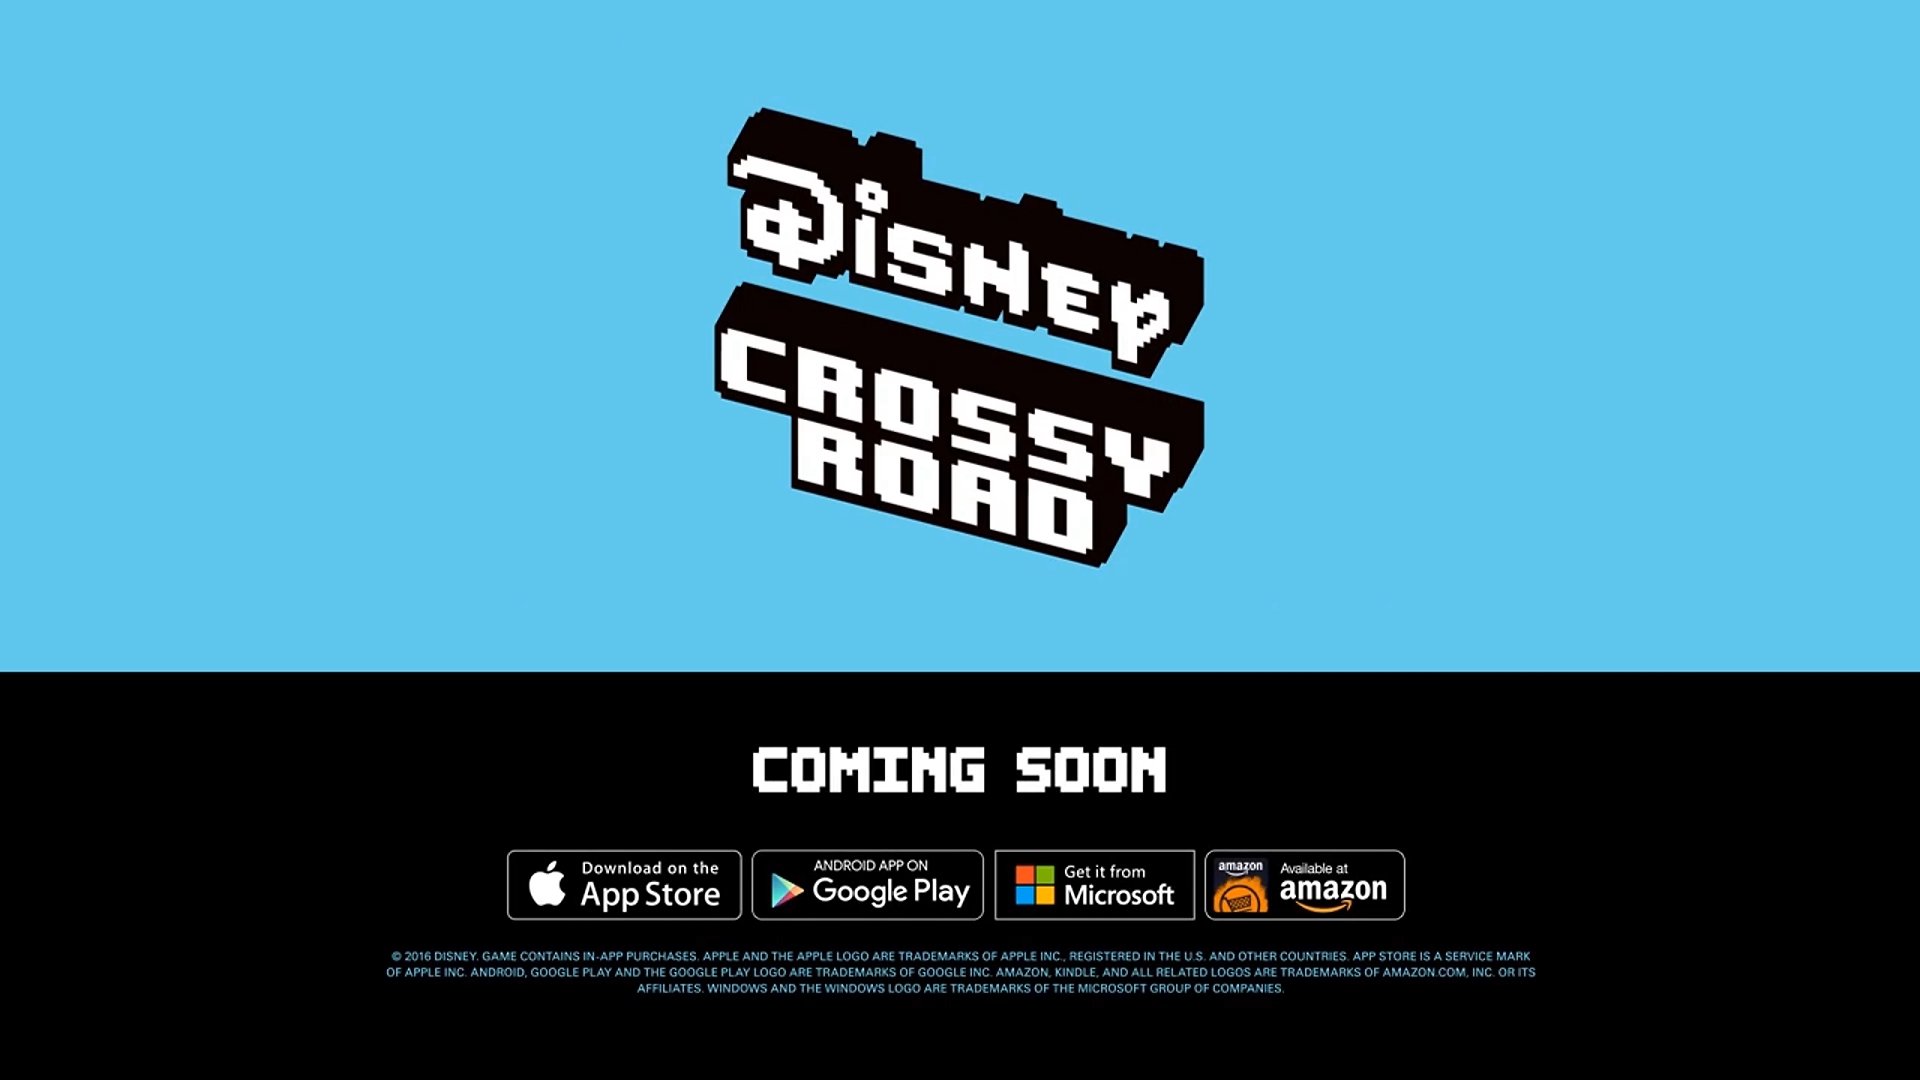 ‘Disney Crossy Road’ update brings Alice in the Looking Glass Figurines